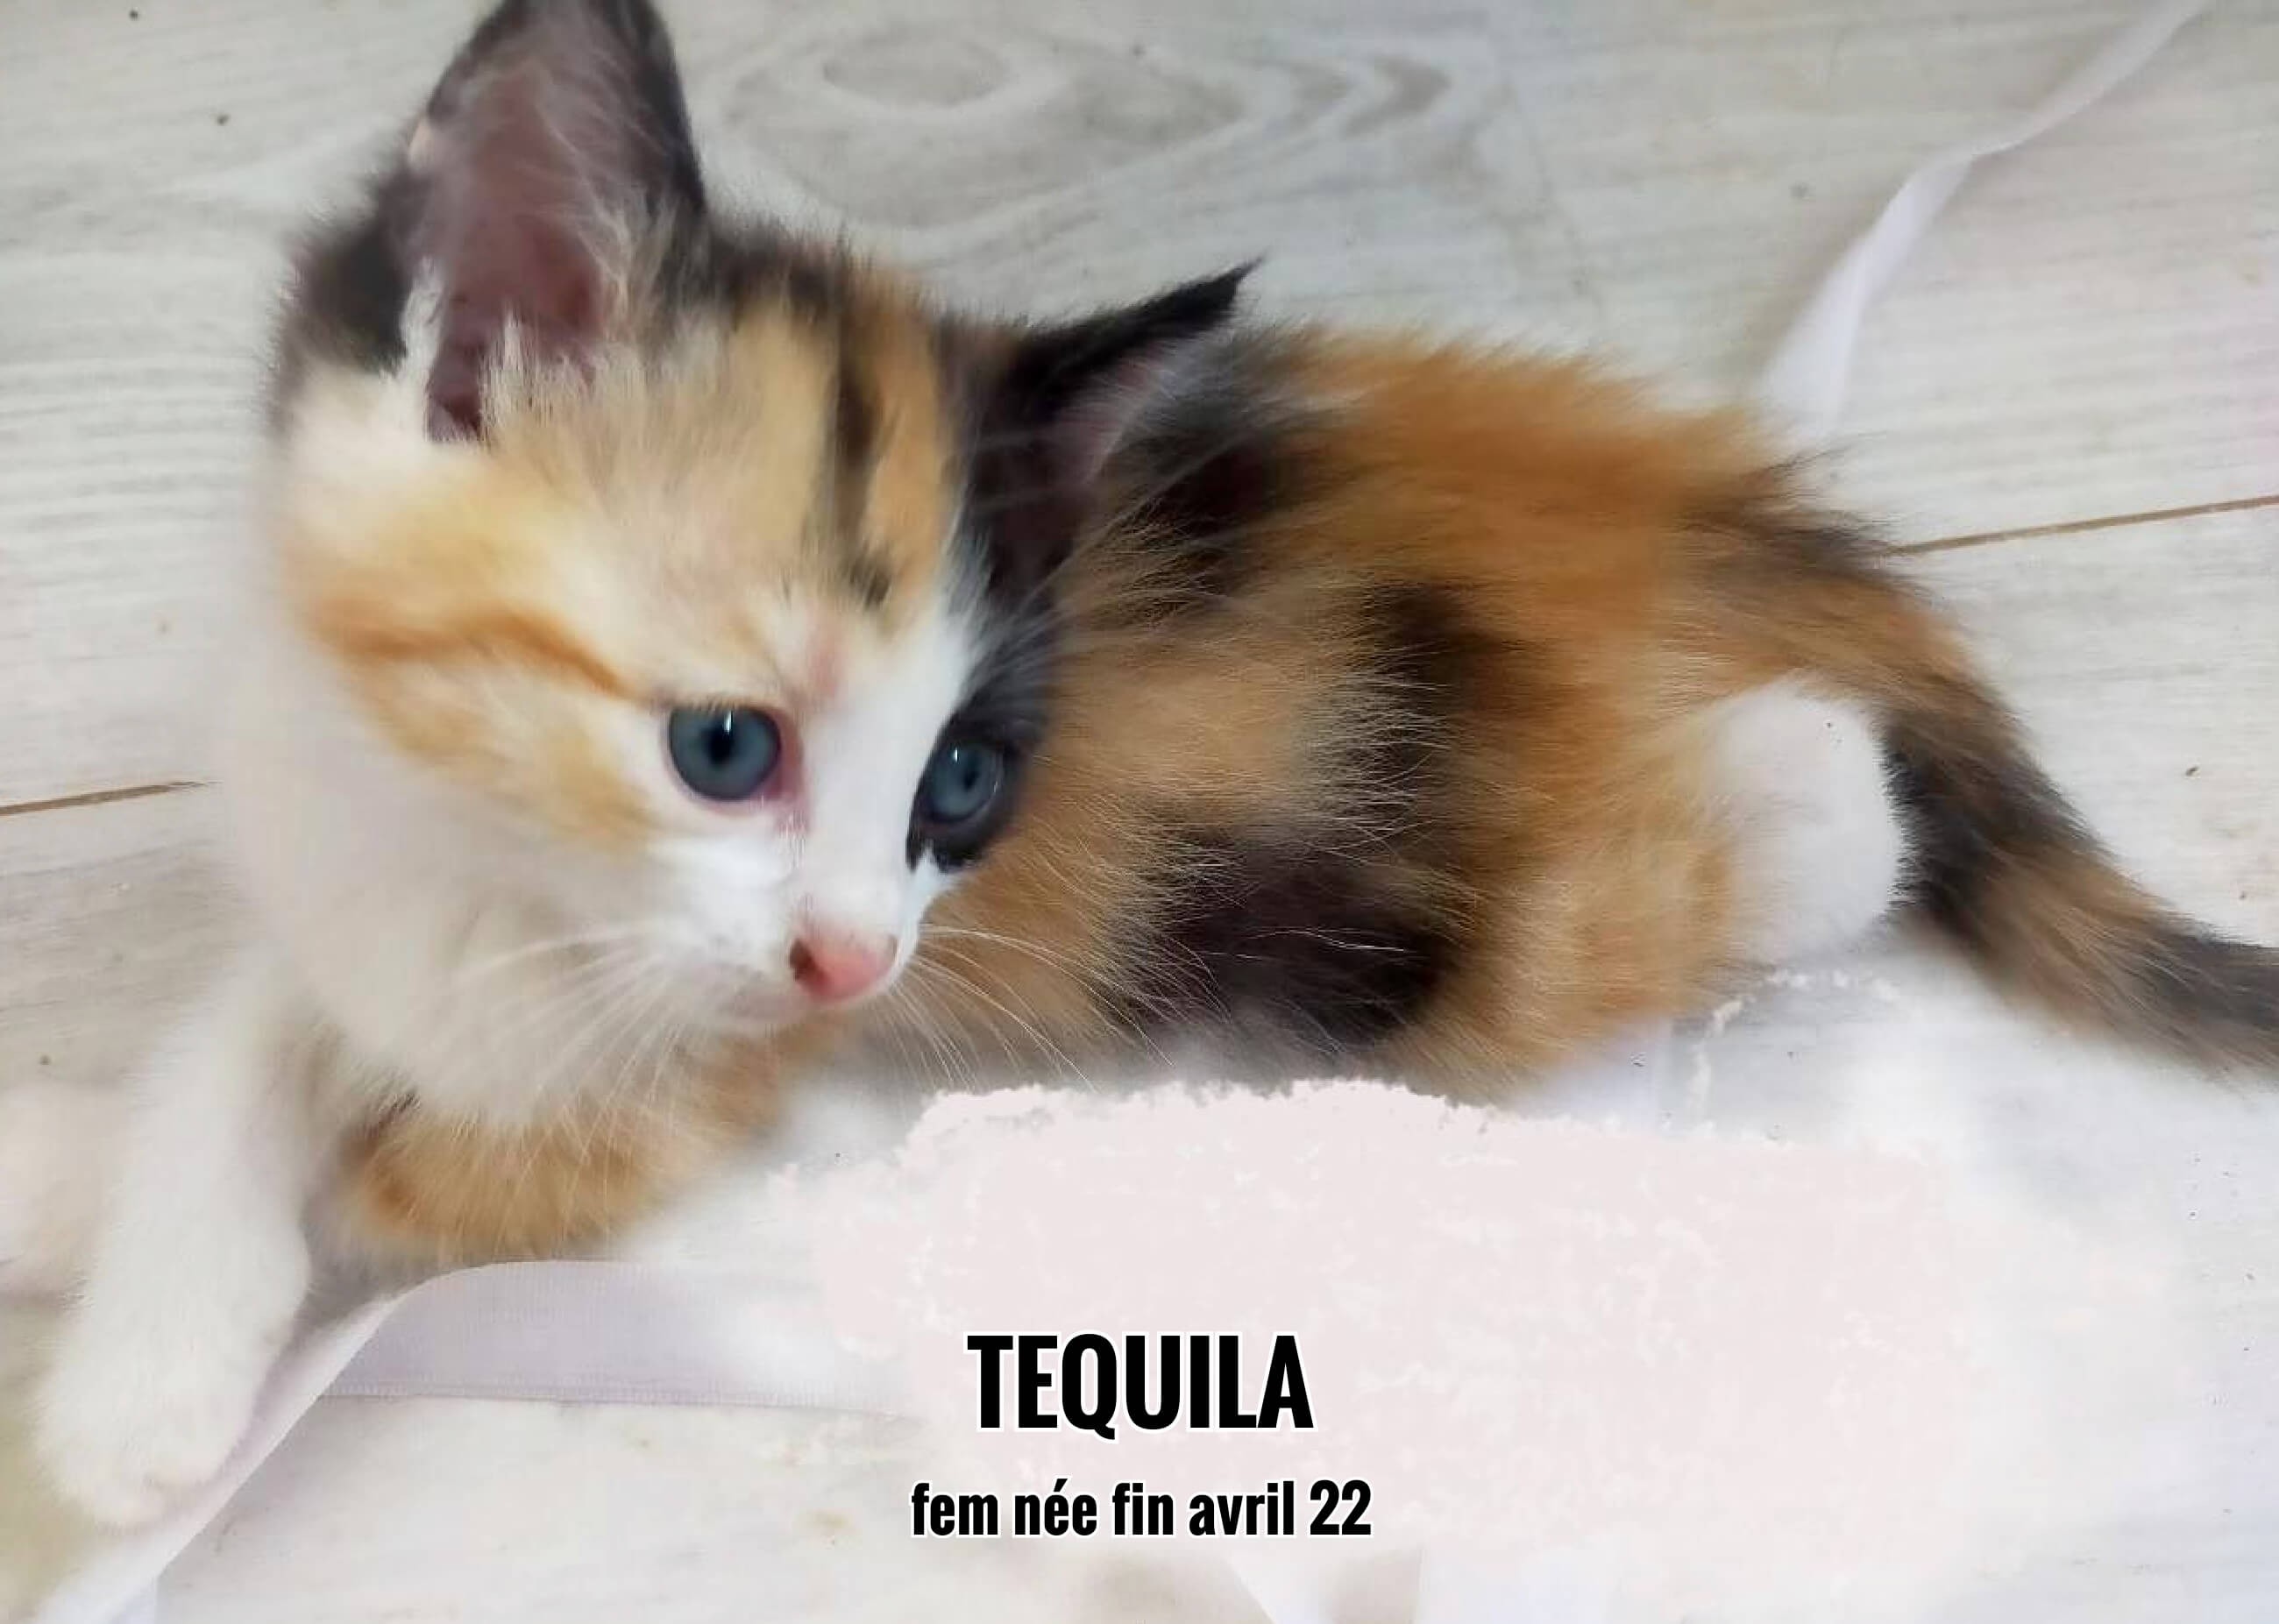 09/07/22 : Tequila a ronronné dans les bras de sa future maîtresse (33)